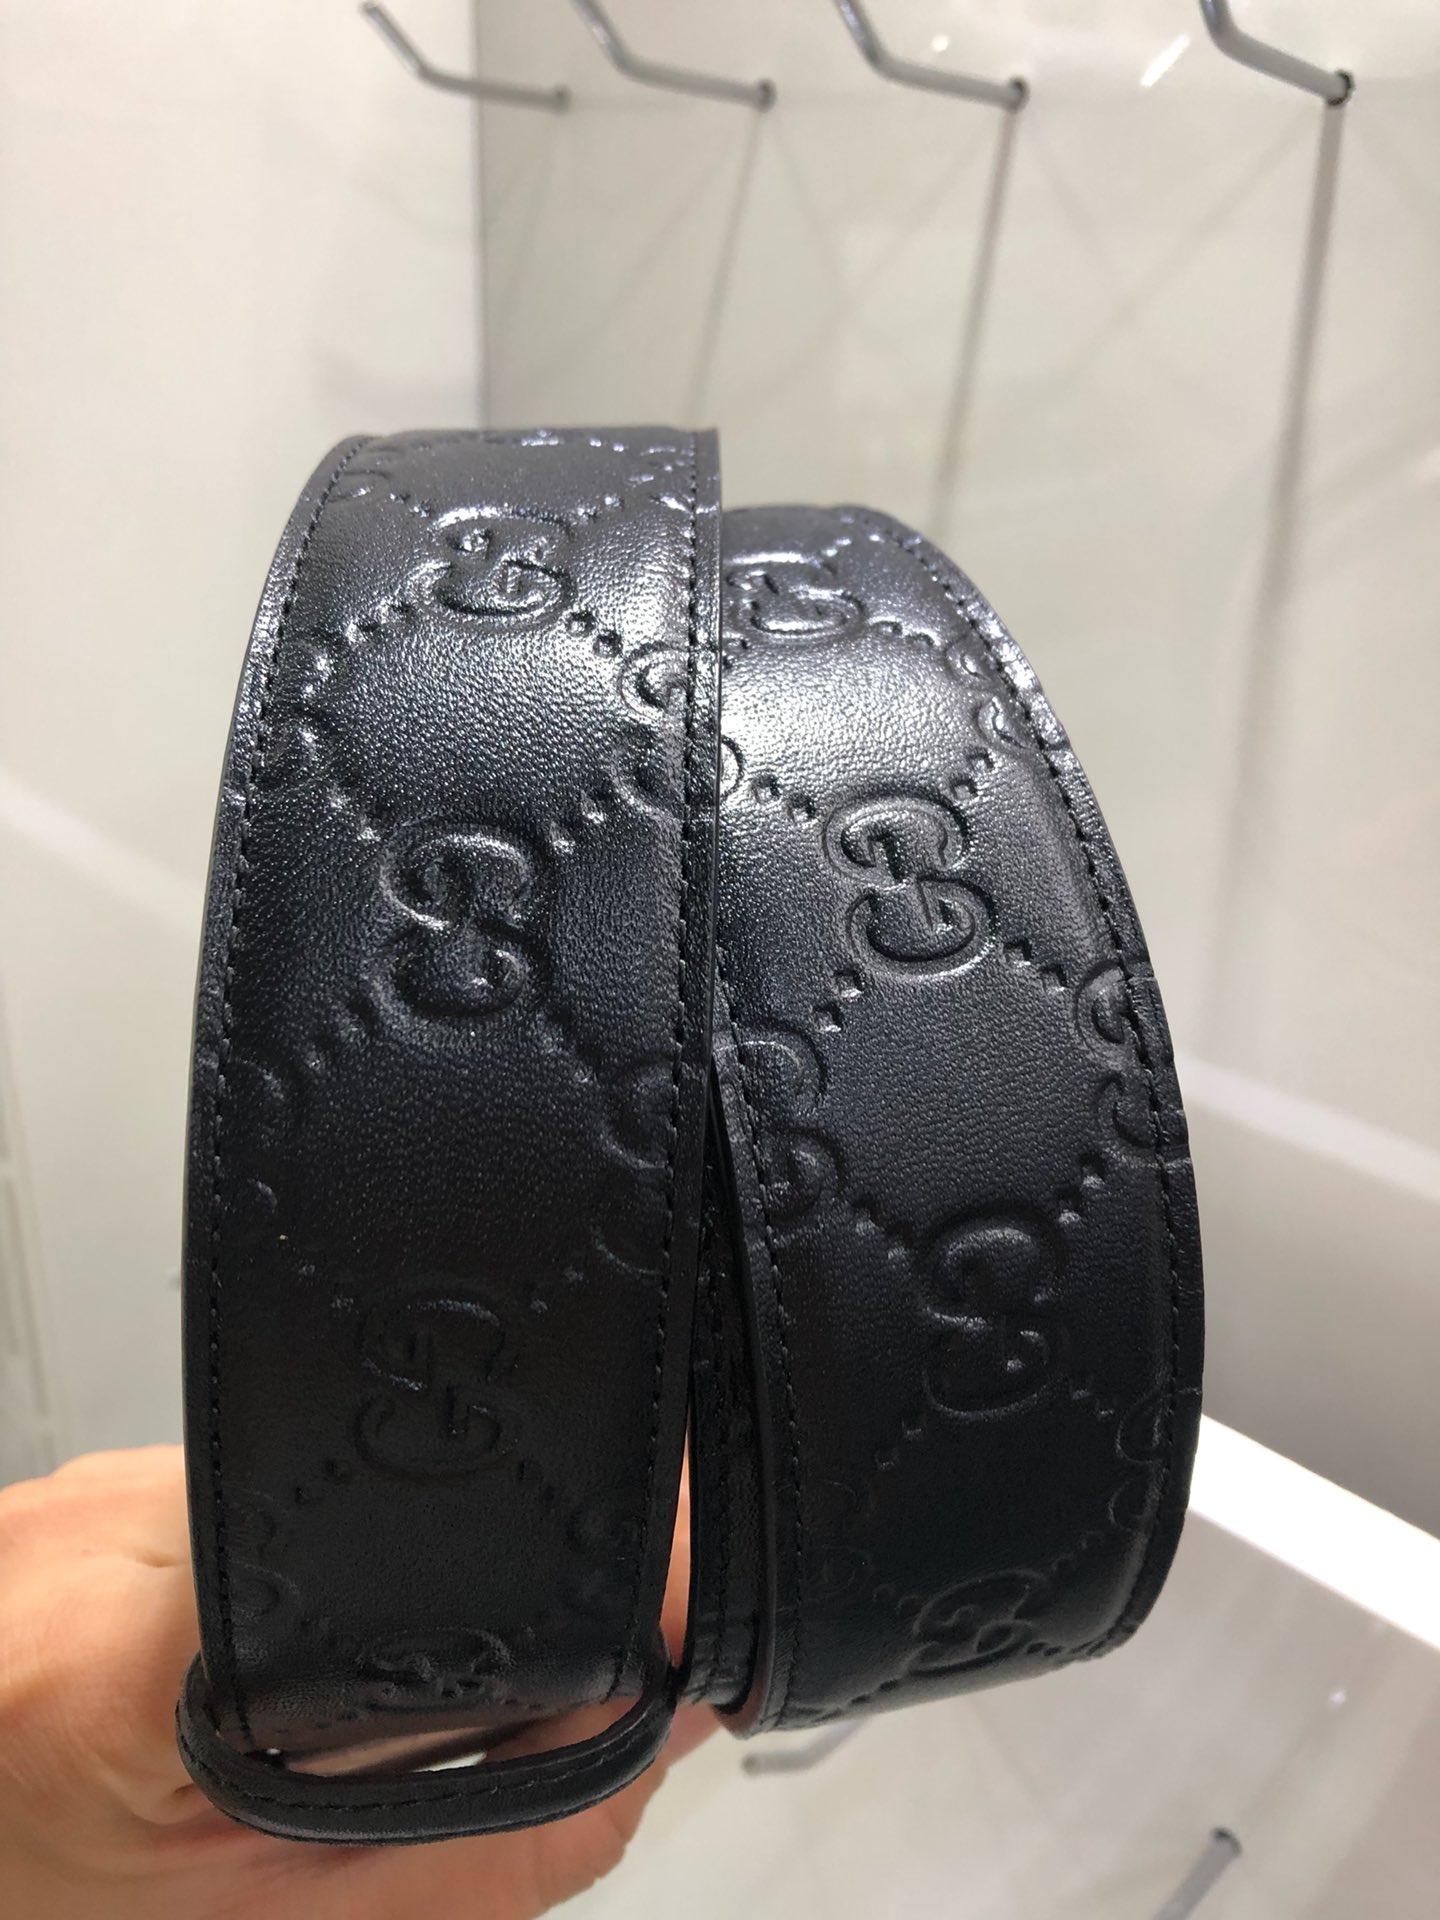 Silver G-less Gucci belt ASS02431